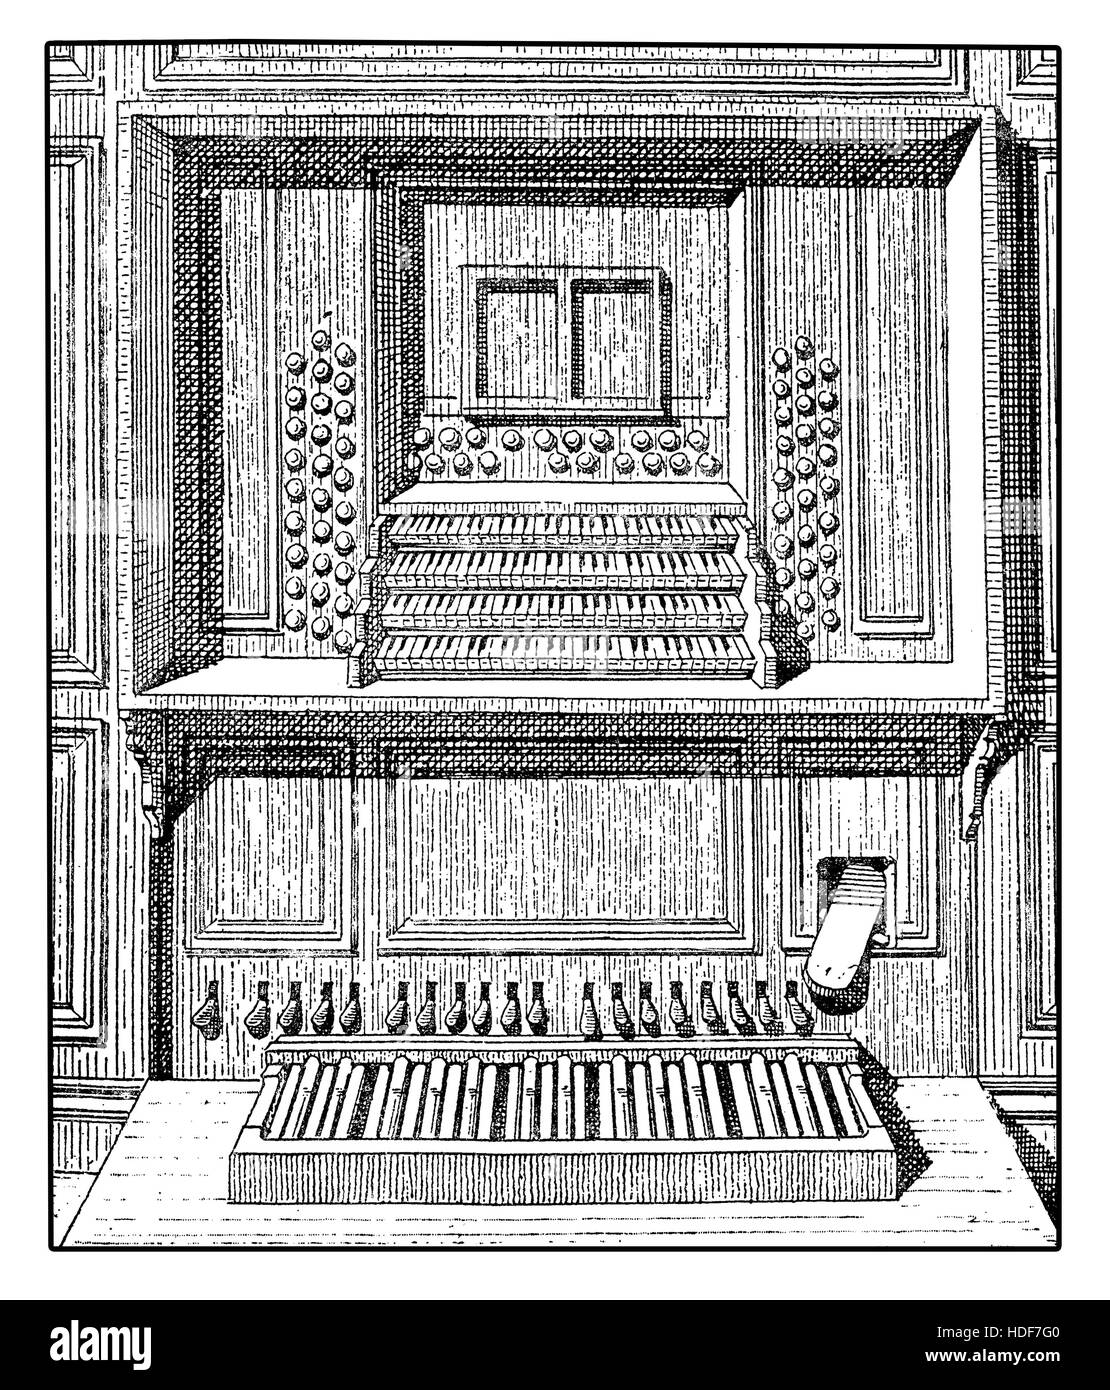 Darstellung einer hölzernen Pfeifenorgel Konsole mit vielen Tastaturen, registriert und Pedale, XIX Jahrhundert Gravur Stockfoto